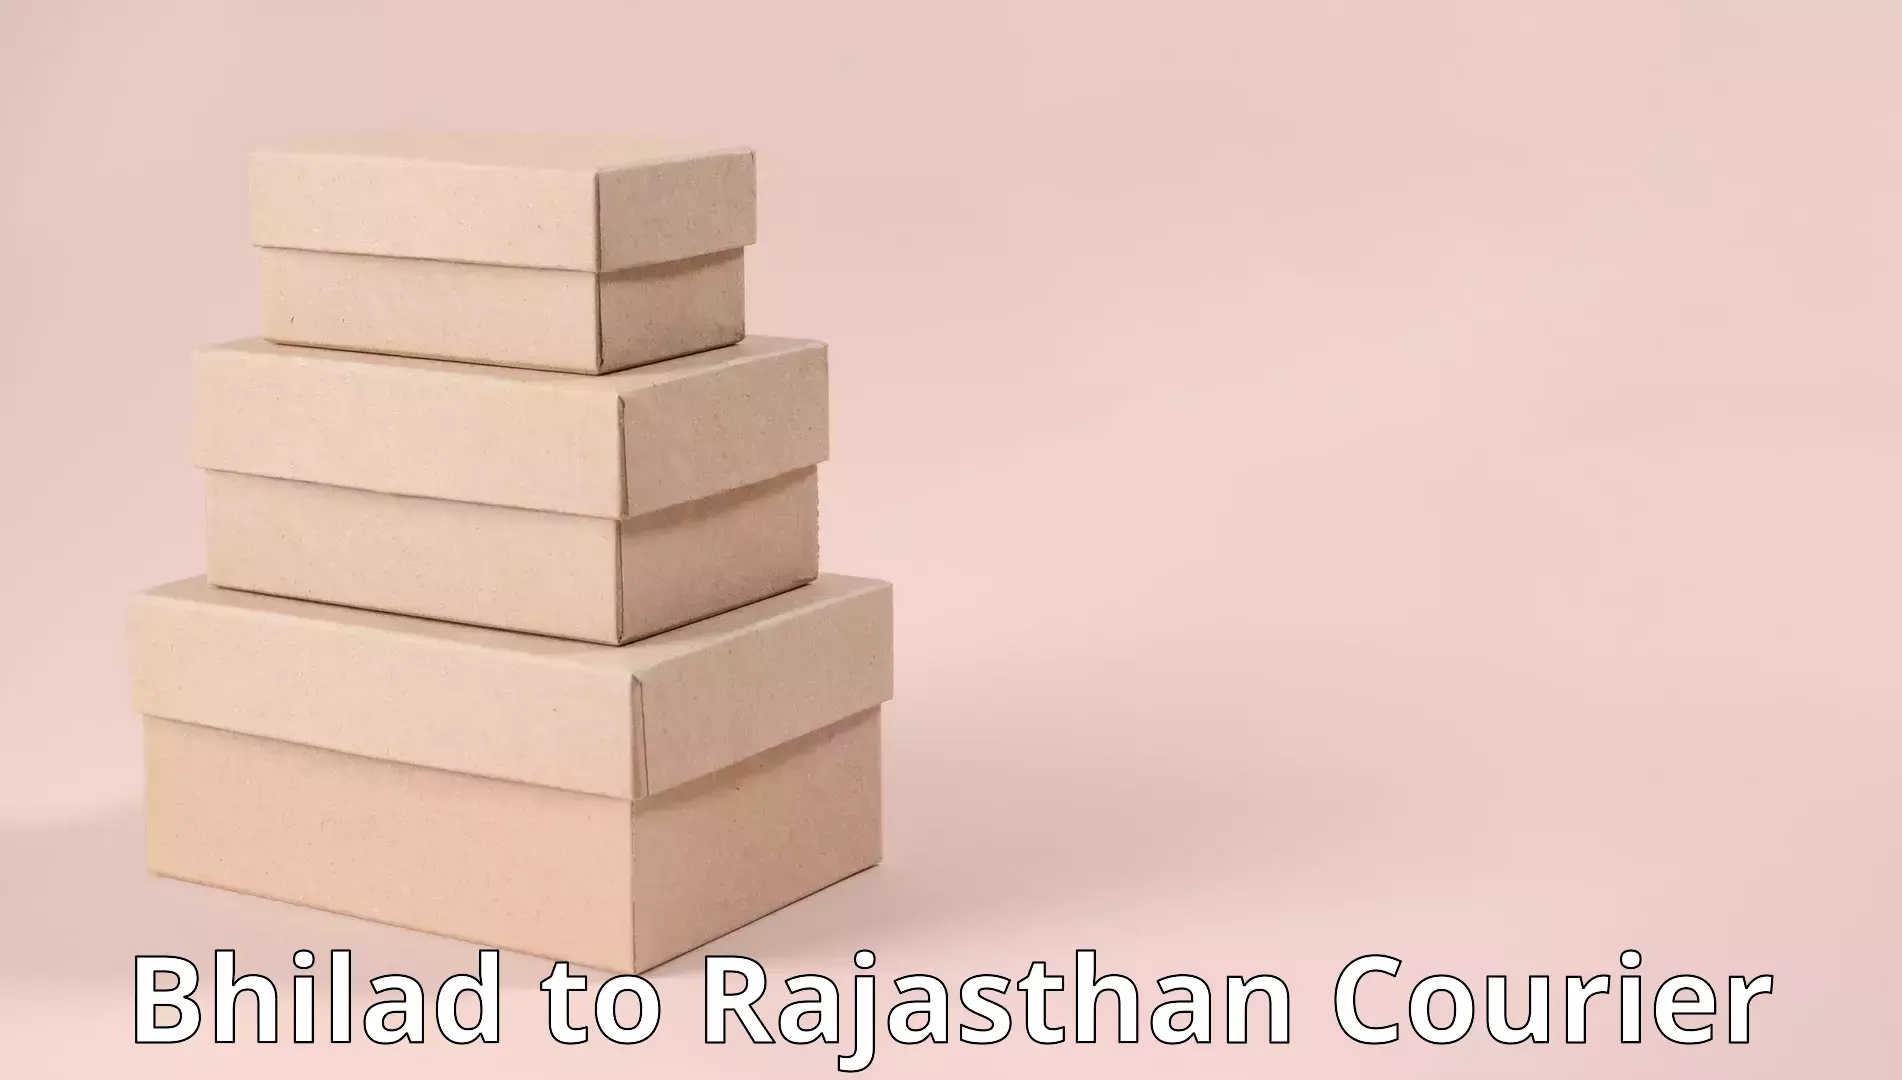 Comprehensive moving assistance Bhilad to Rajasthan